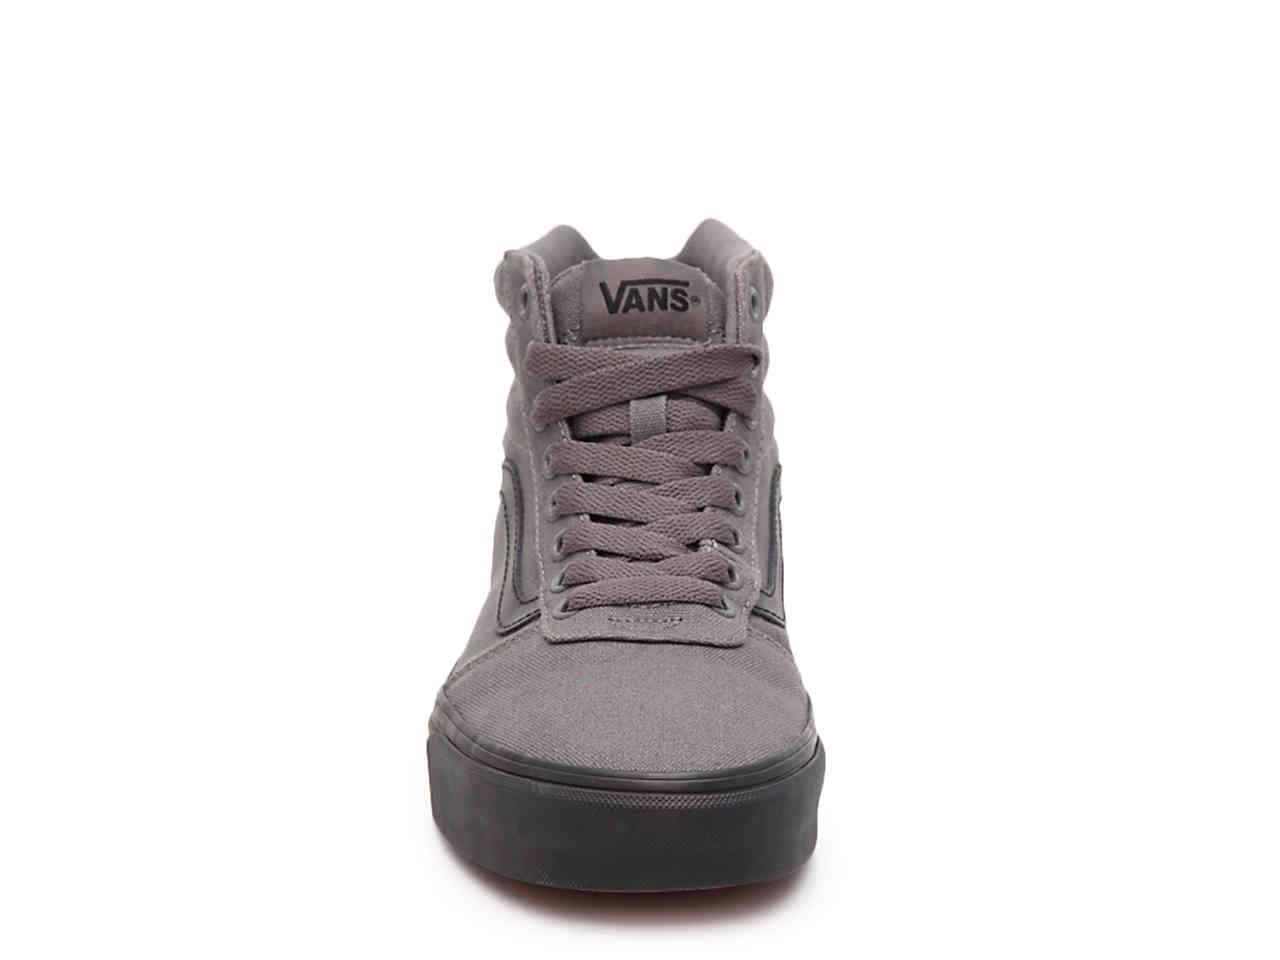 Vans Canvas Ward Hi High-top Sneaker in Grey (Gray) for Men - Lyst